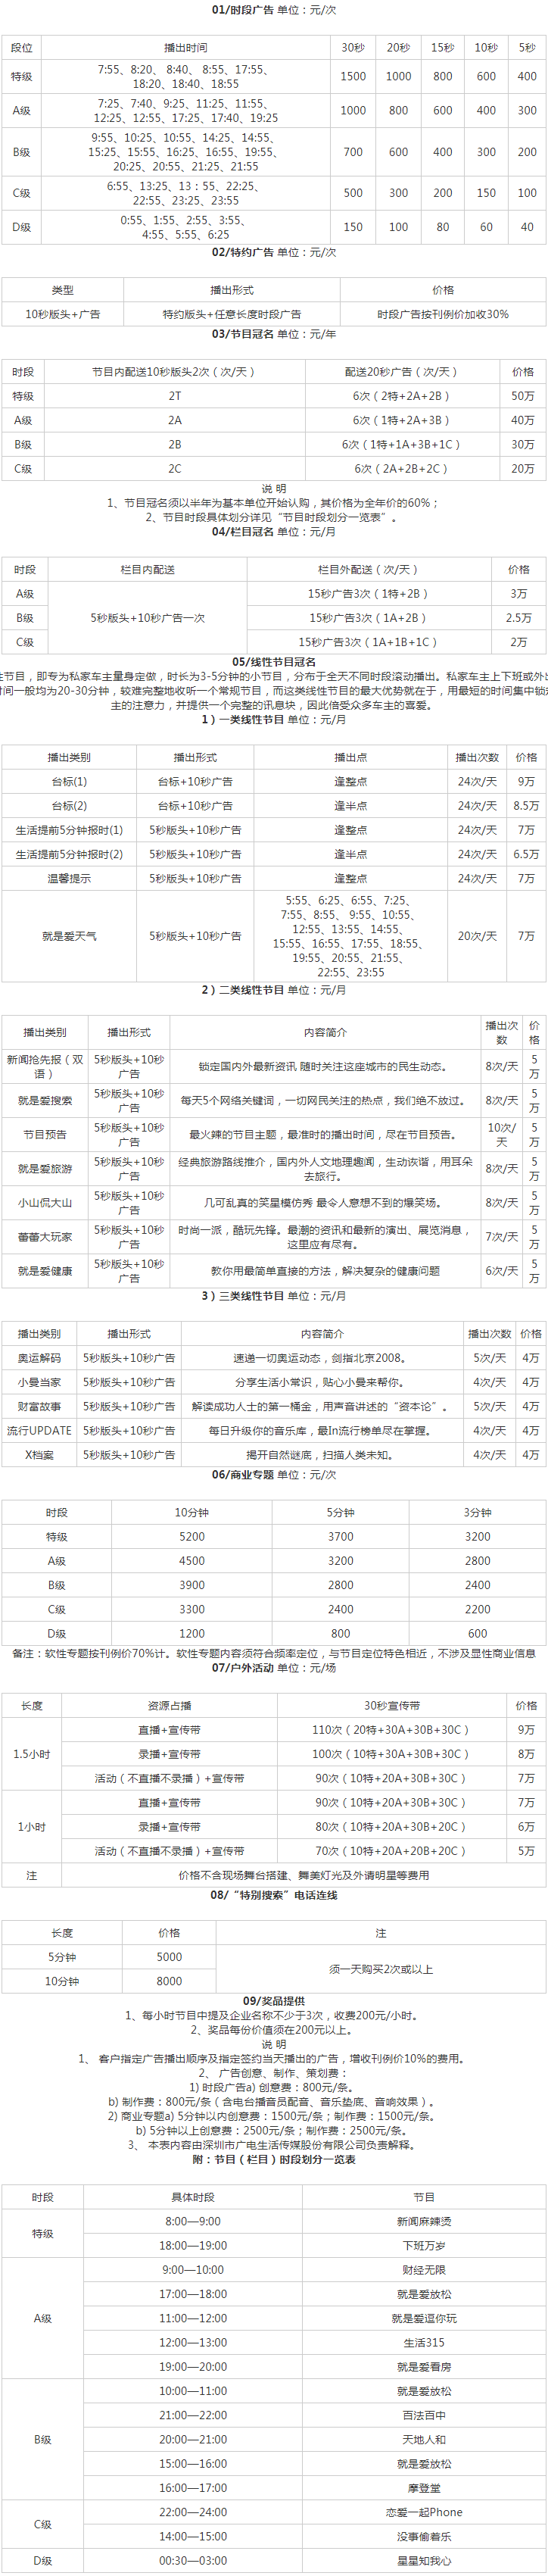 2009深圳人民广播电台生活频率 FM94.2广告报价表.png